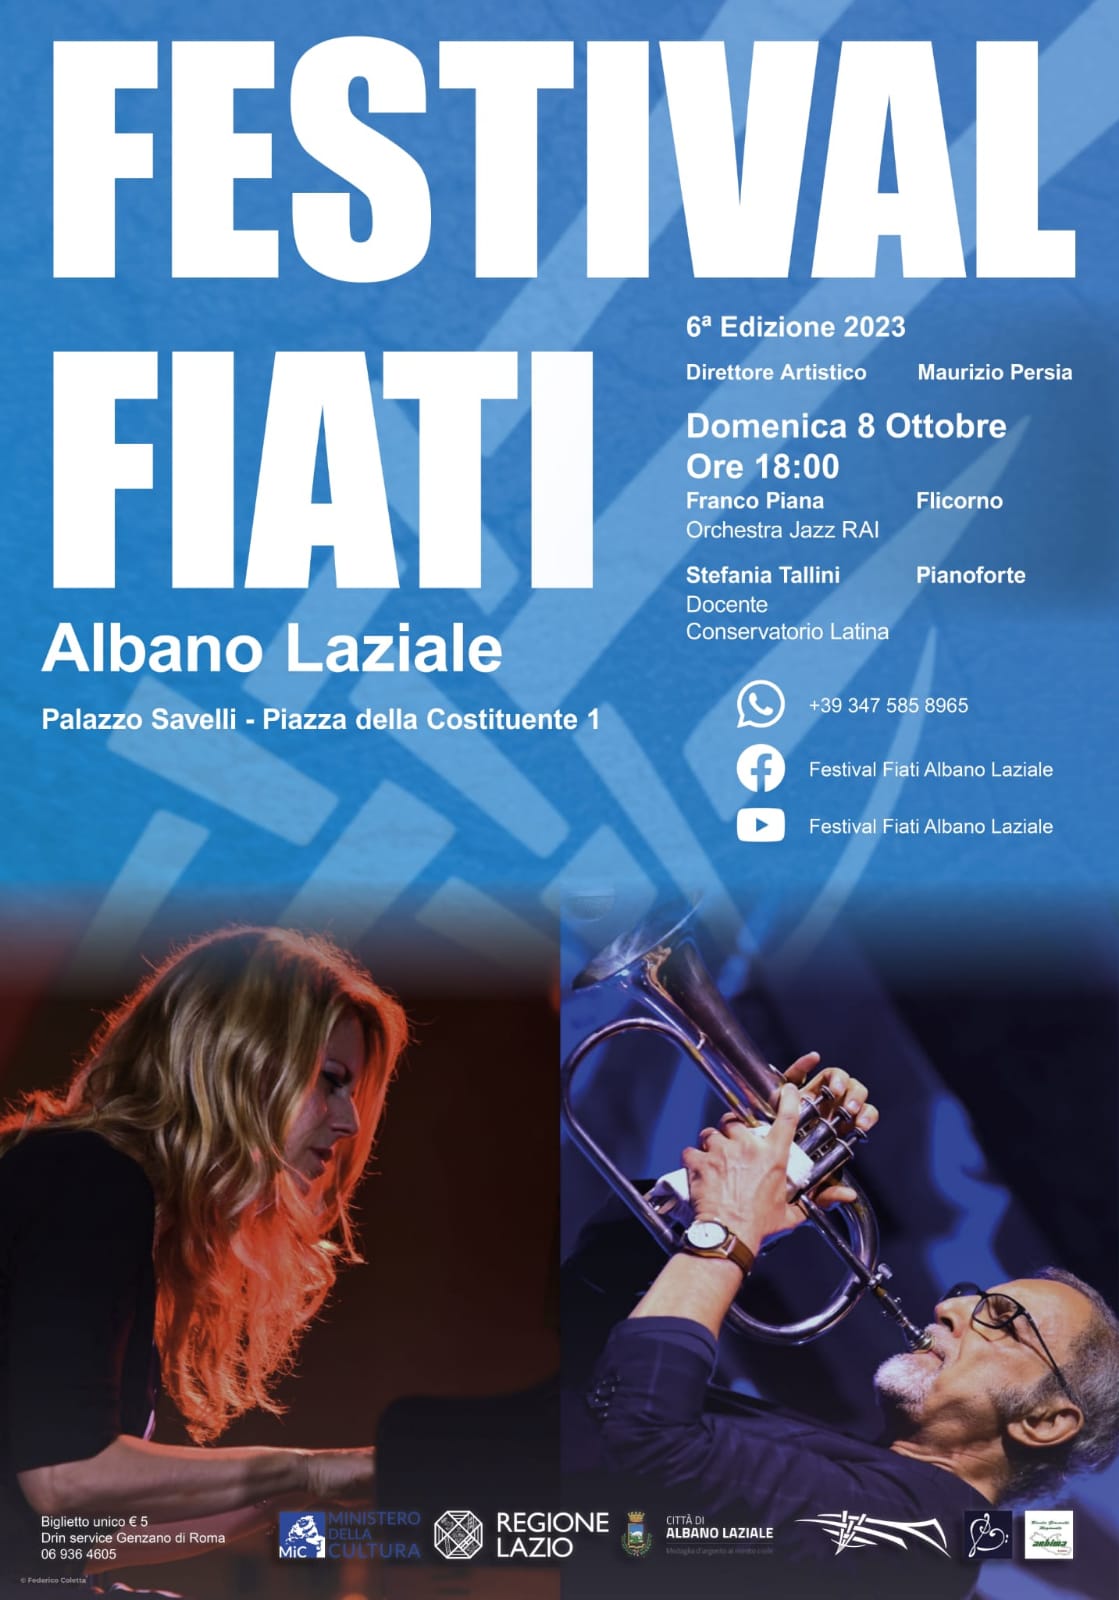 Franco Piana e Stefania Tallini presentano “E se domani” al Festival Fiati Albano Laziale